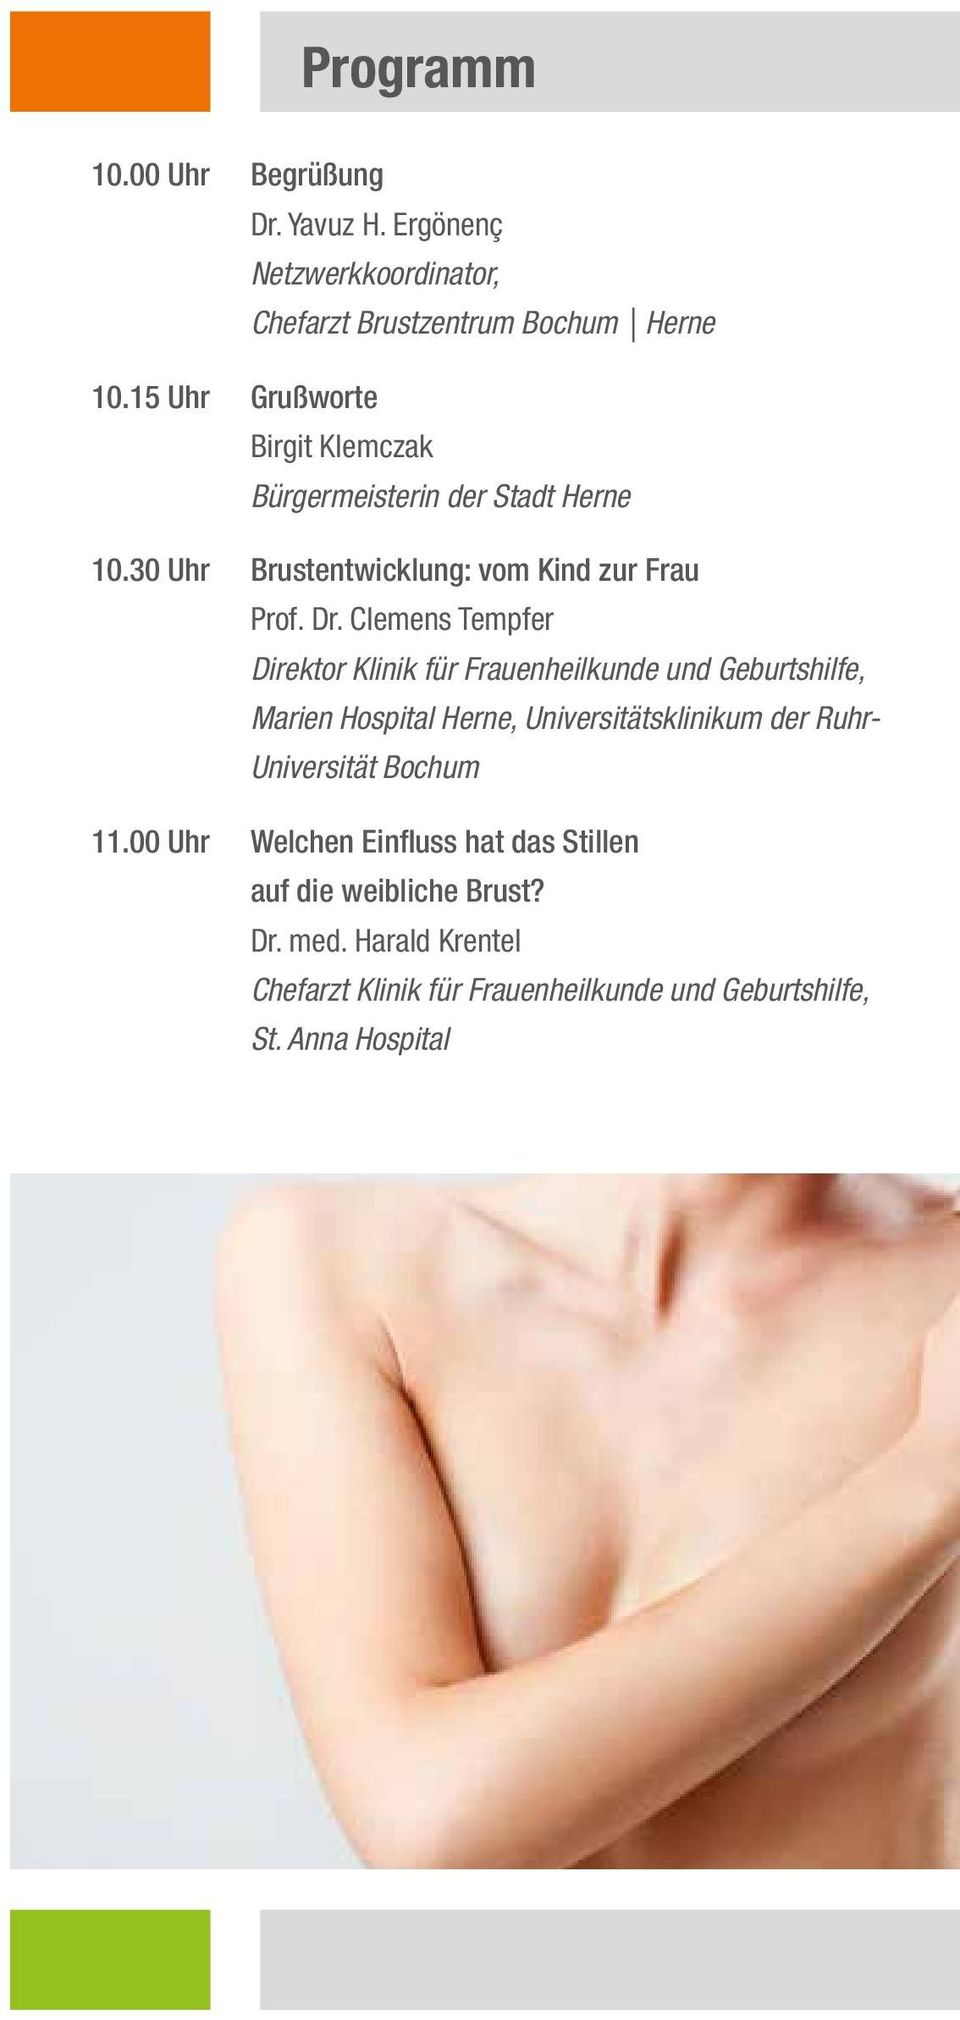 Clemens Tempfer Direktor Klinik für Frauenheilkunde und Geburtshilfe, Marien Hospital Herne, Universitätsklinikum der Ruhr-